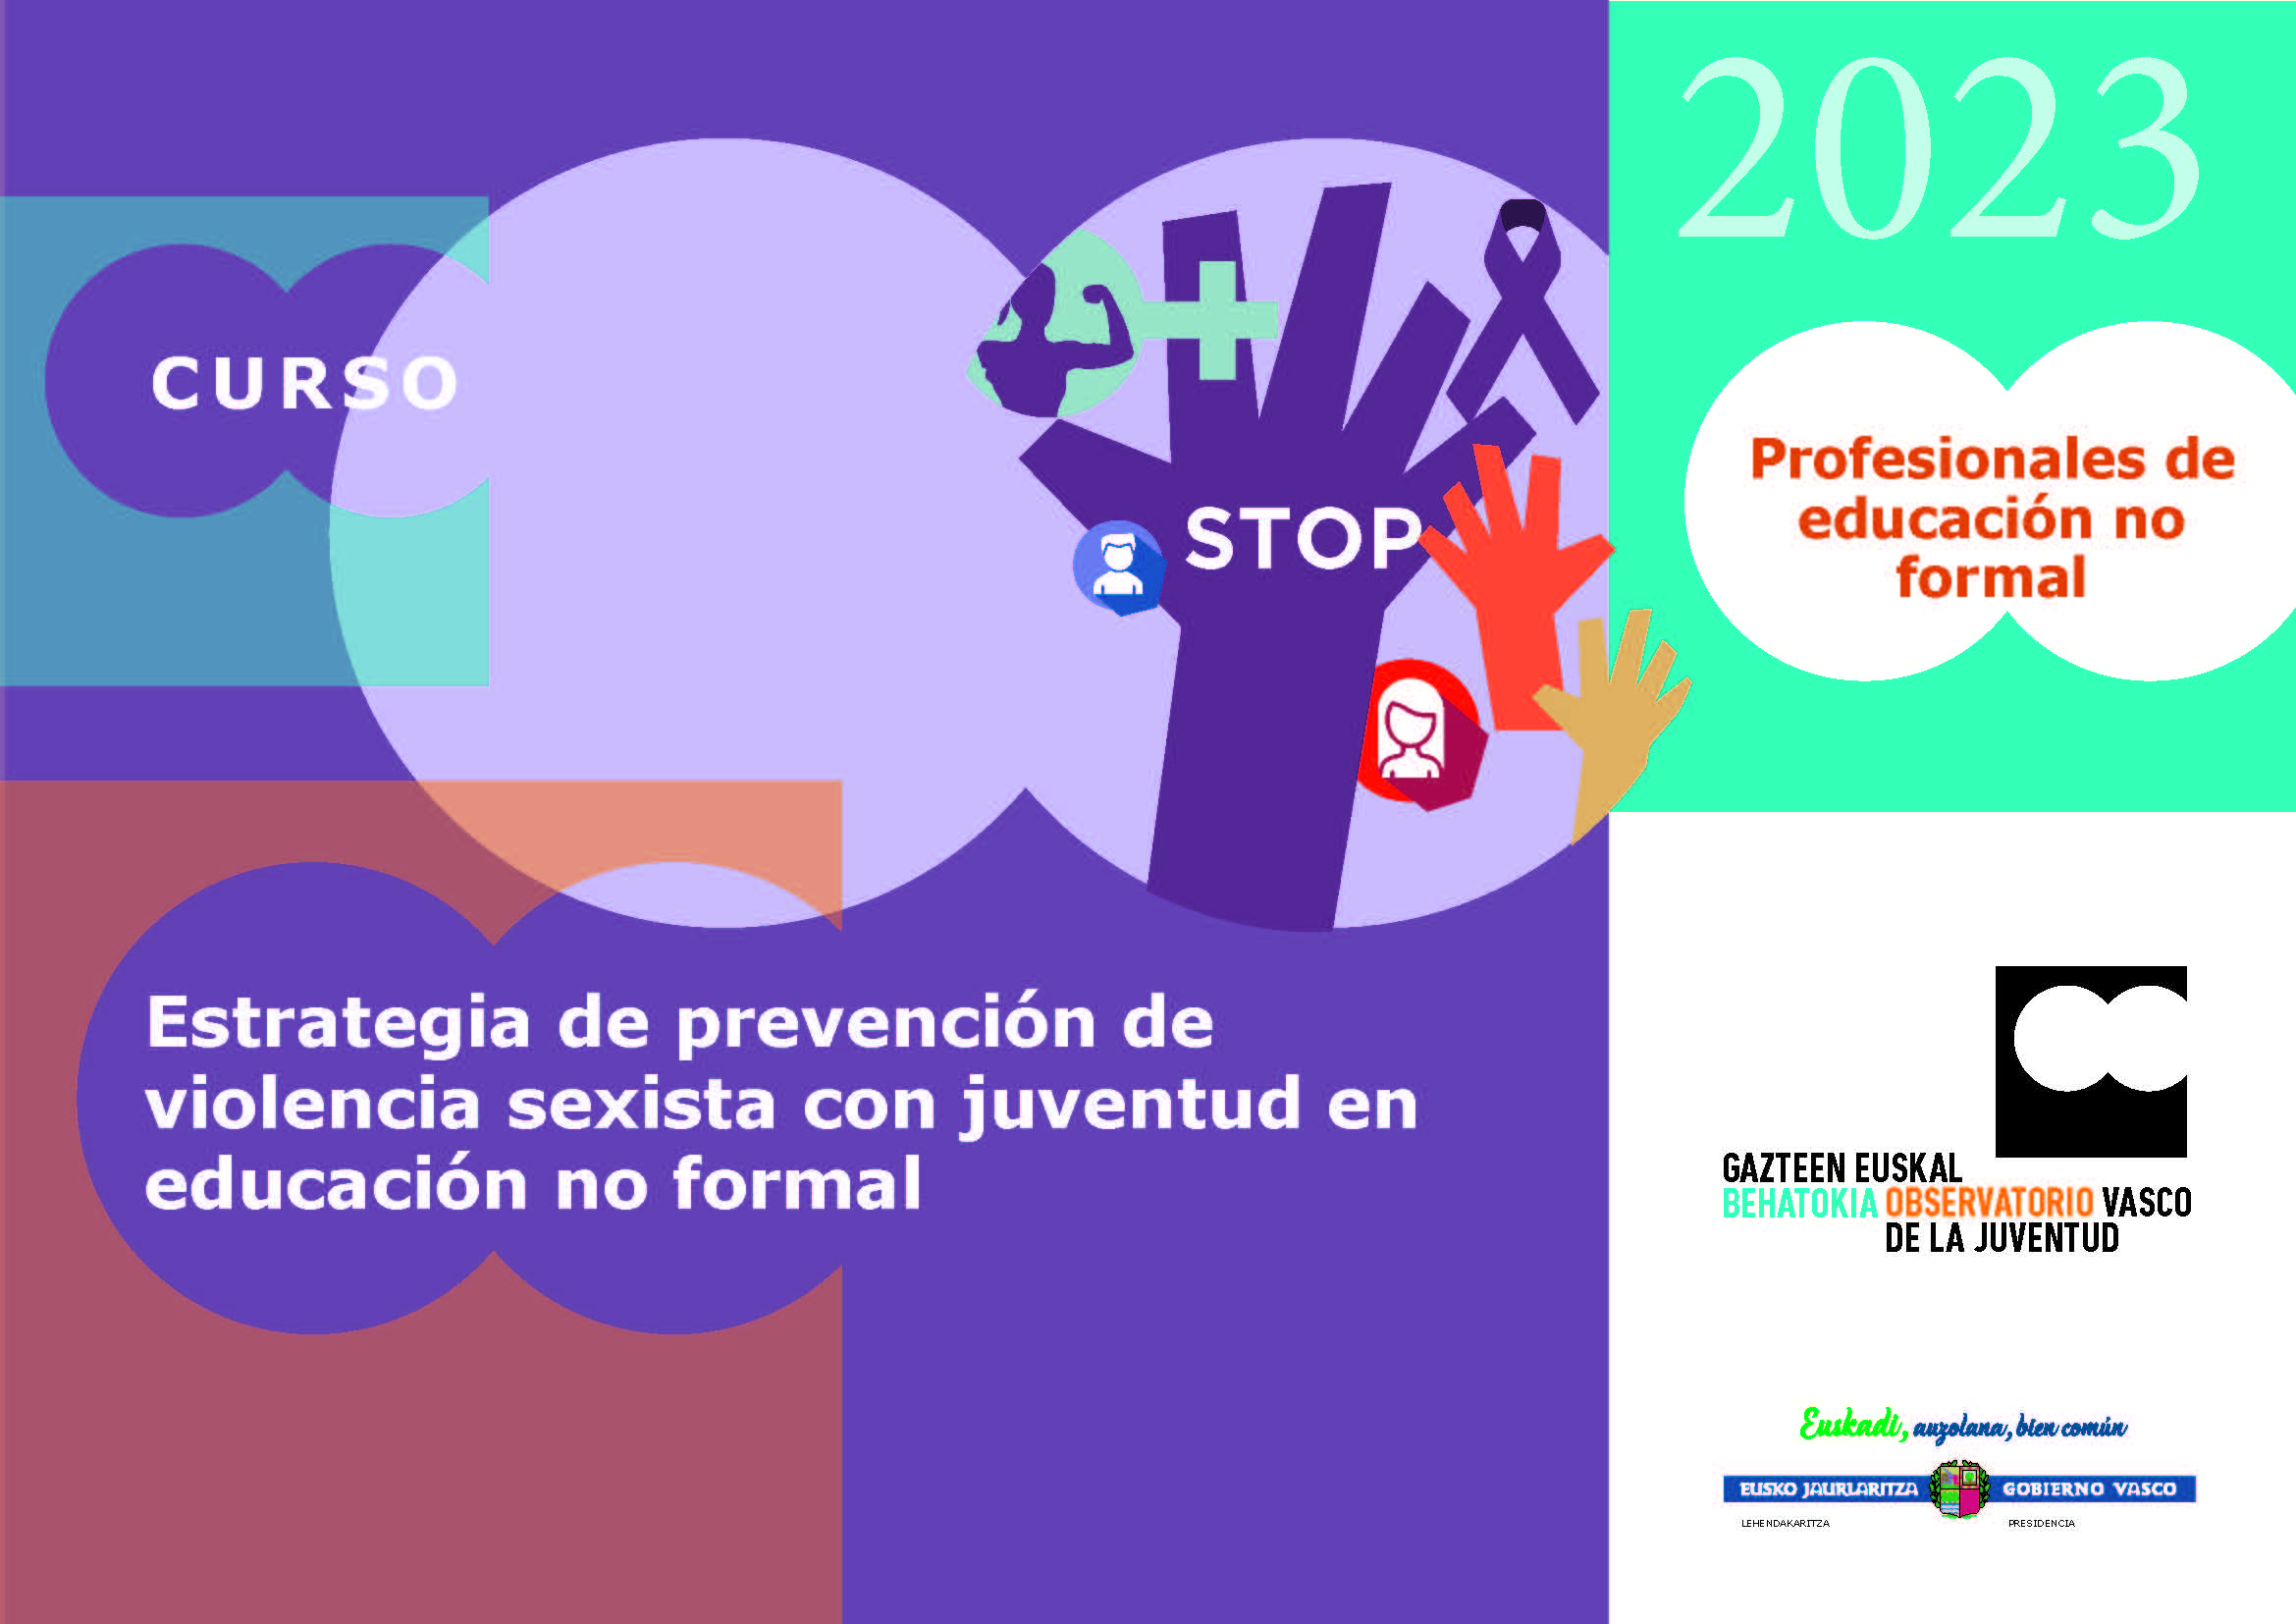 Curso: Estrategia de prevención de violencia sexista con juventud en educación no formal